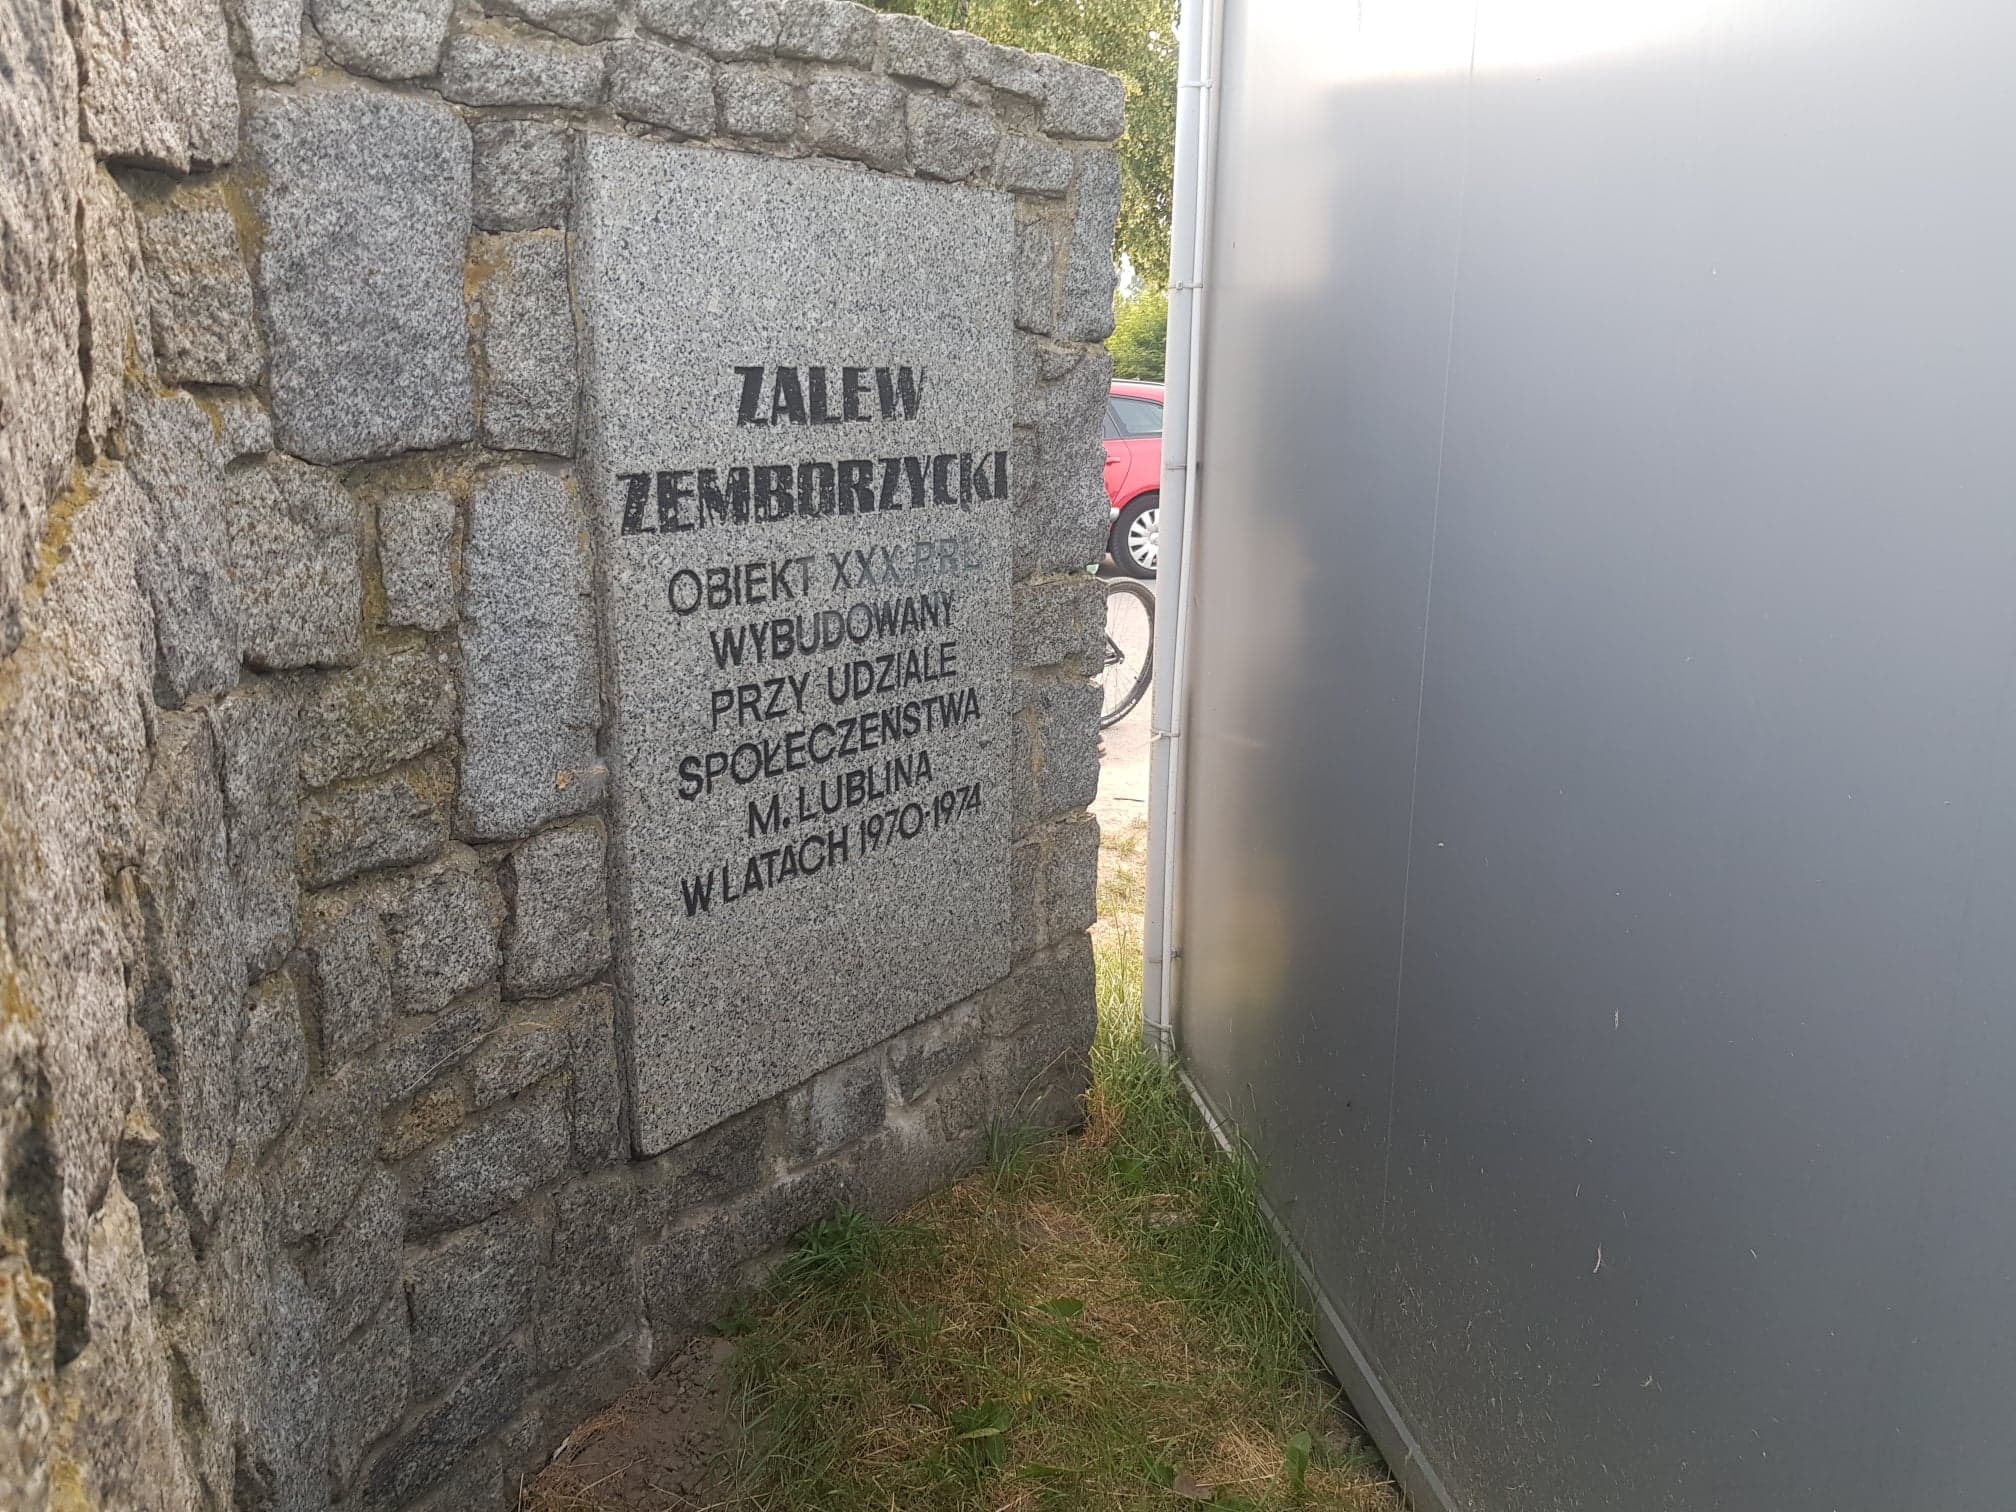 Punkt gastronomiczny zasłania tablicę pamiątkową nad Zalewem Zemborzyckim. Po zakończeniu sezonu budka zostanie przestawiona (zdjęcia)